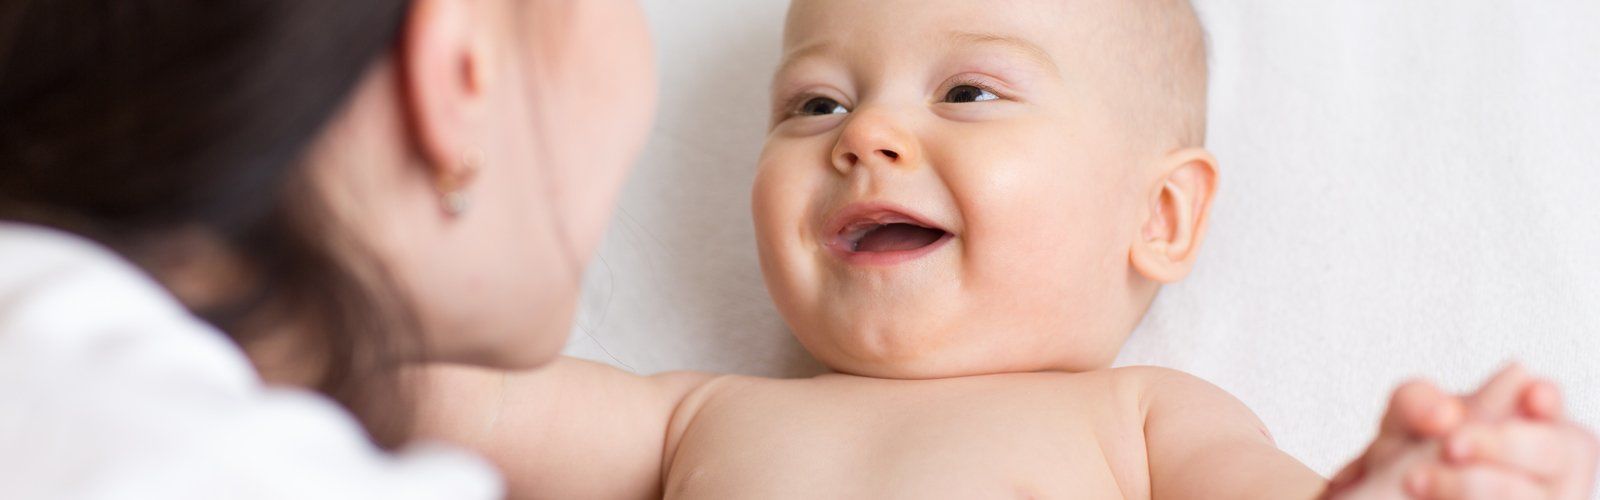 Переваривание молока в желудке у новорожденного thumbnail